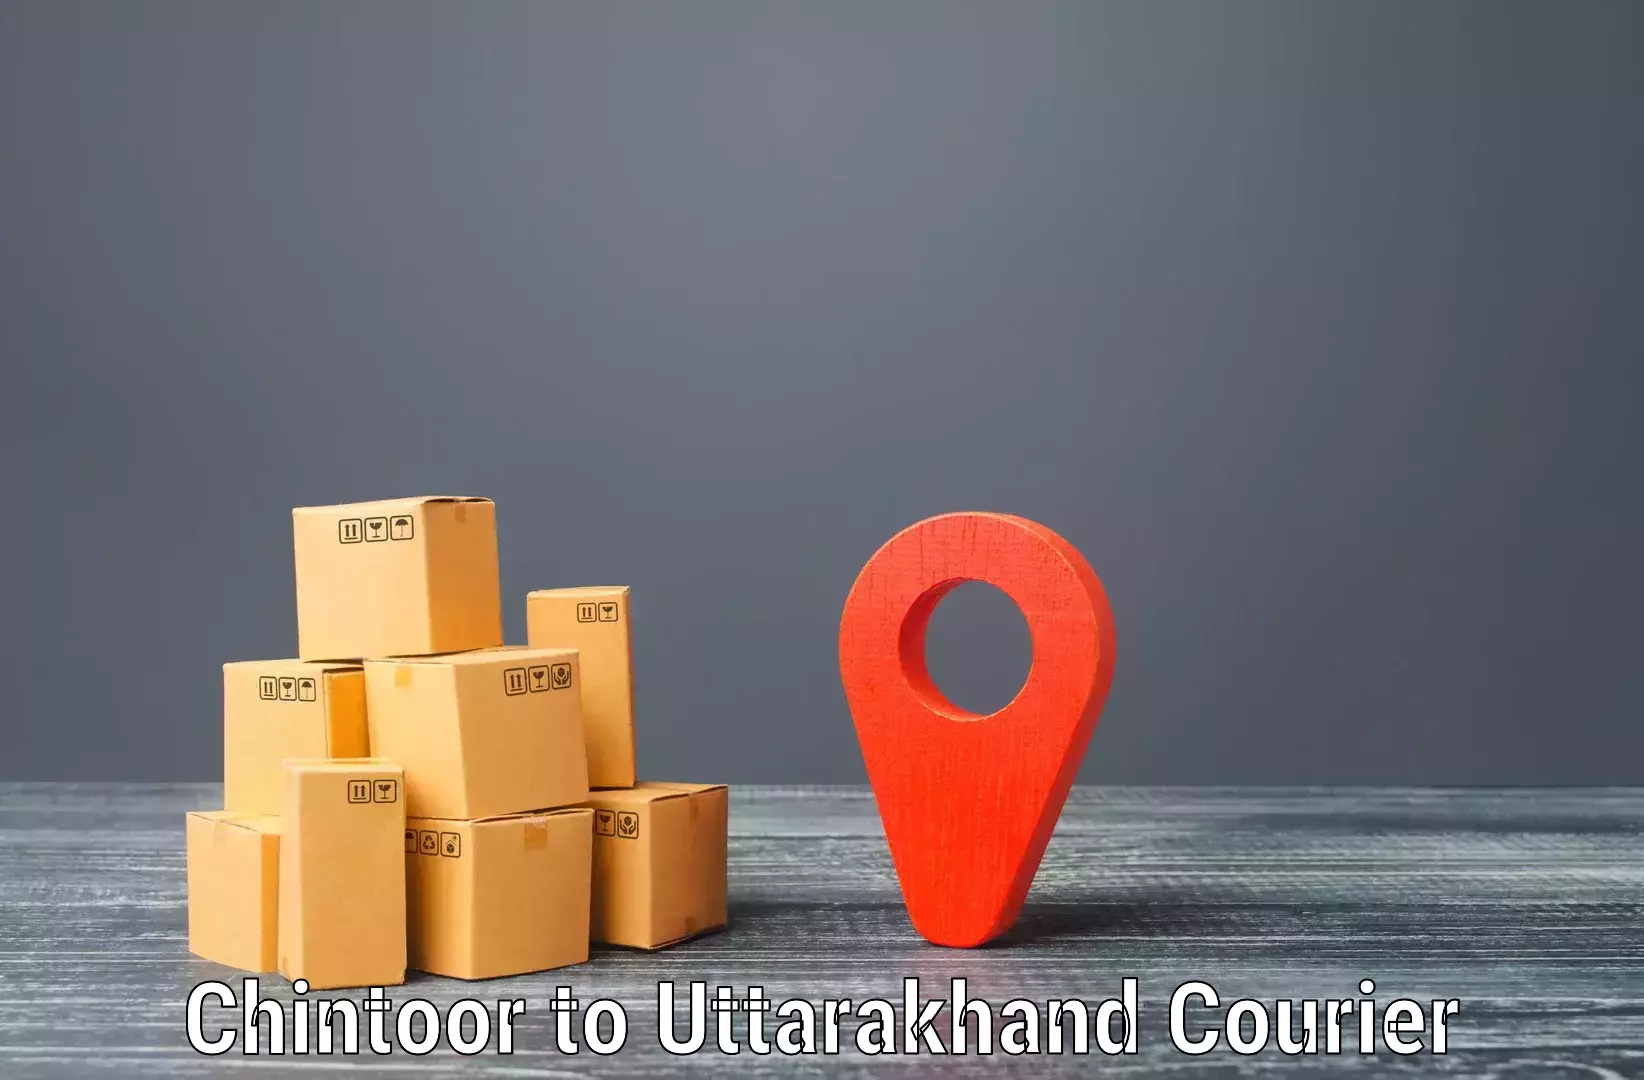 Efficient cargo services Chintoor to IIT Roorkee